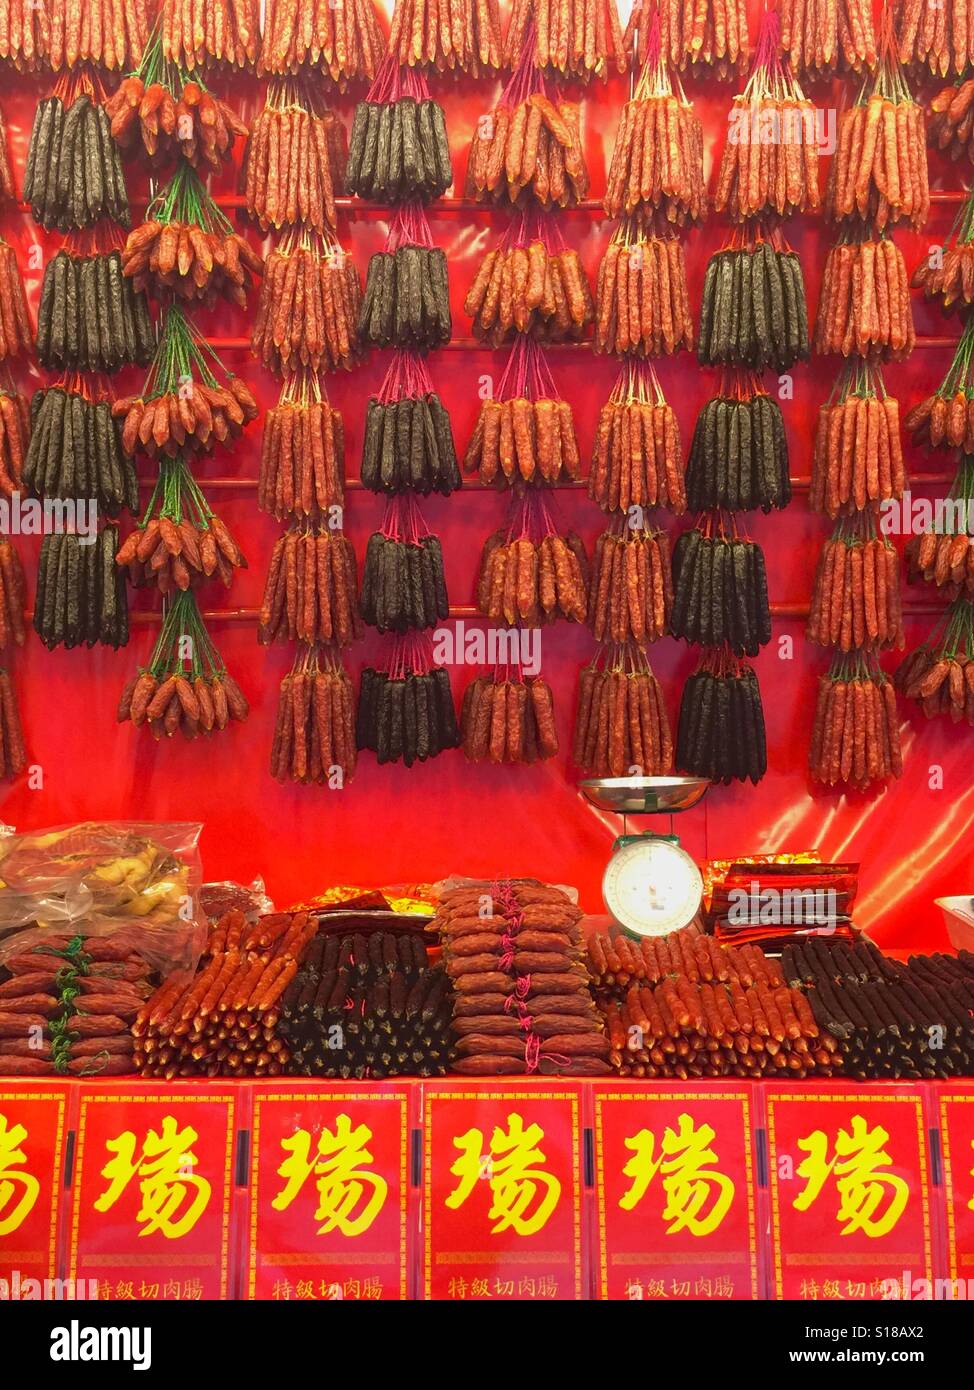 Saucisses de porc chinois pour le Nouvel An lunaire, Chinatown, Singapour Banque D'Images